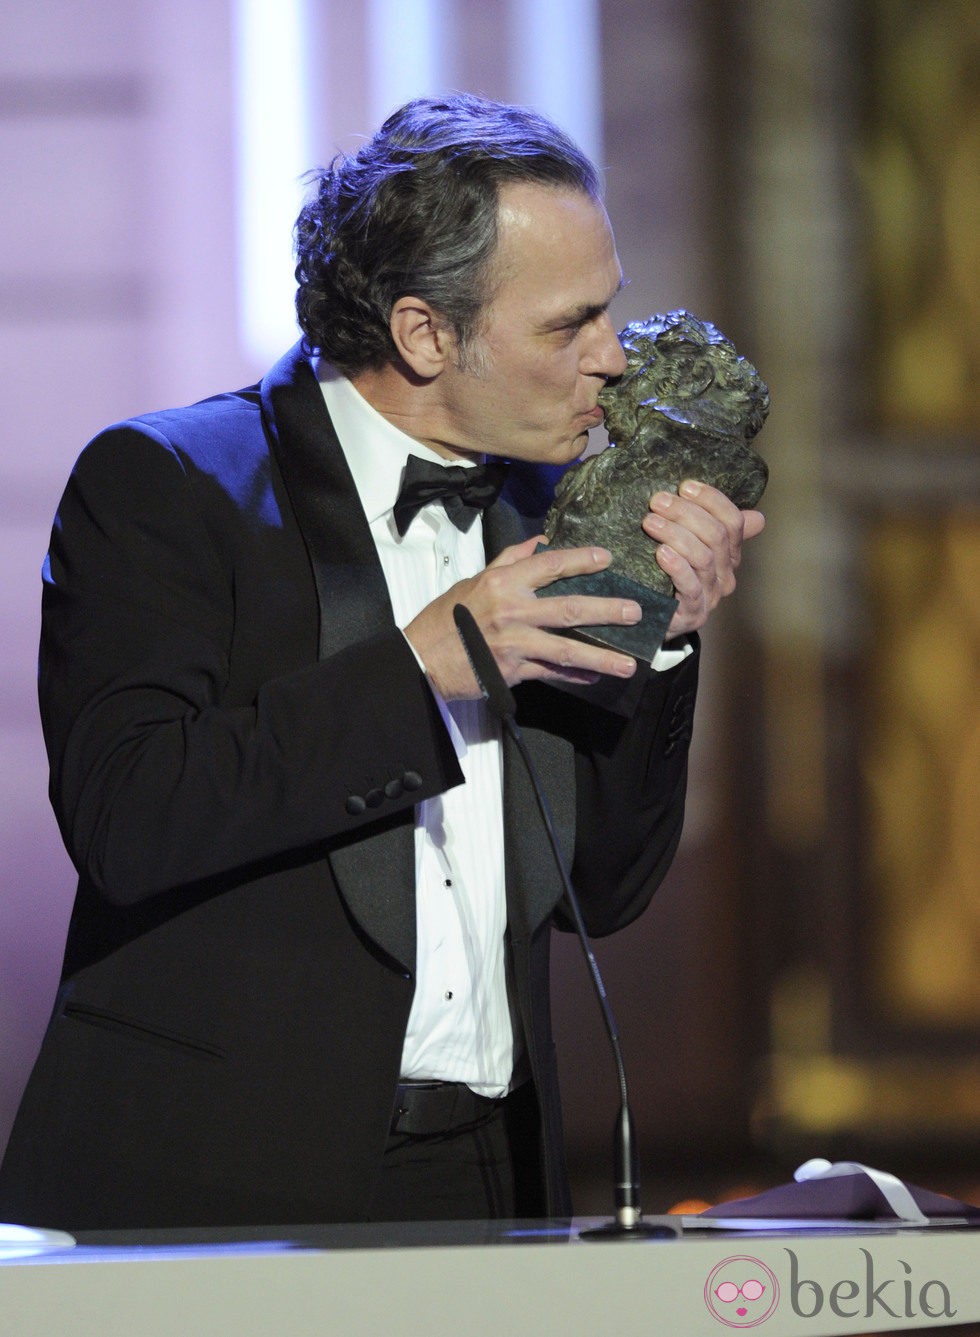 José Coronado recoge su Premio Goya 2012 José Coronado, un actor de